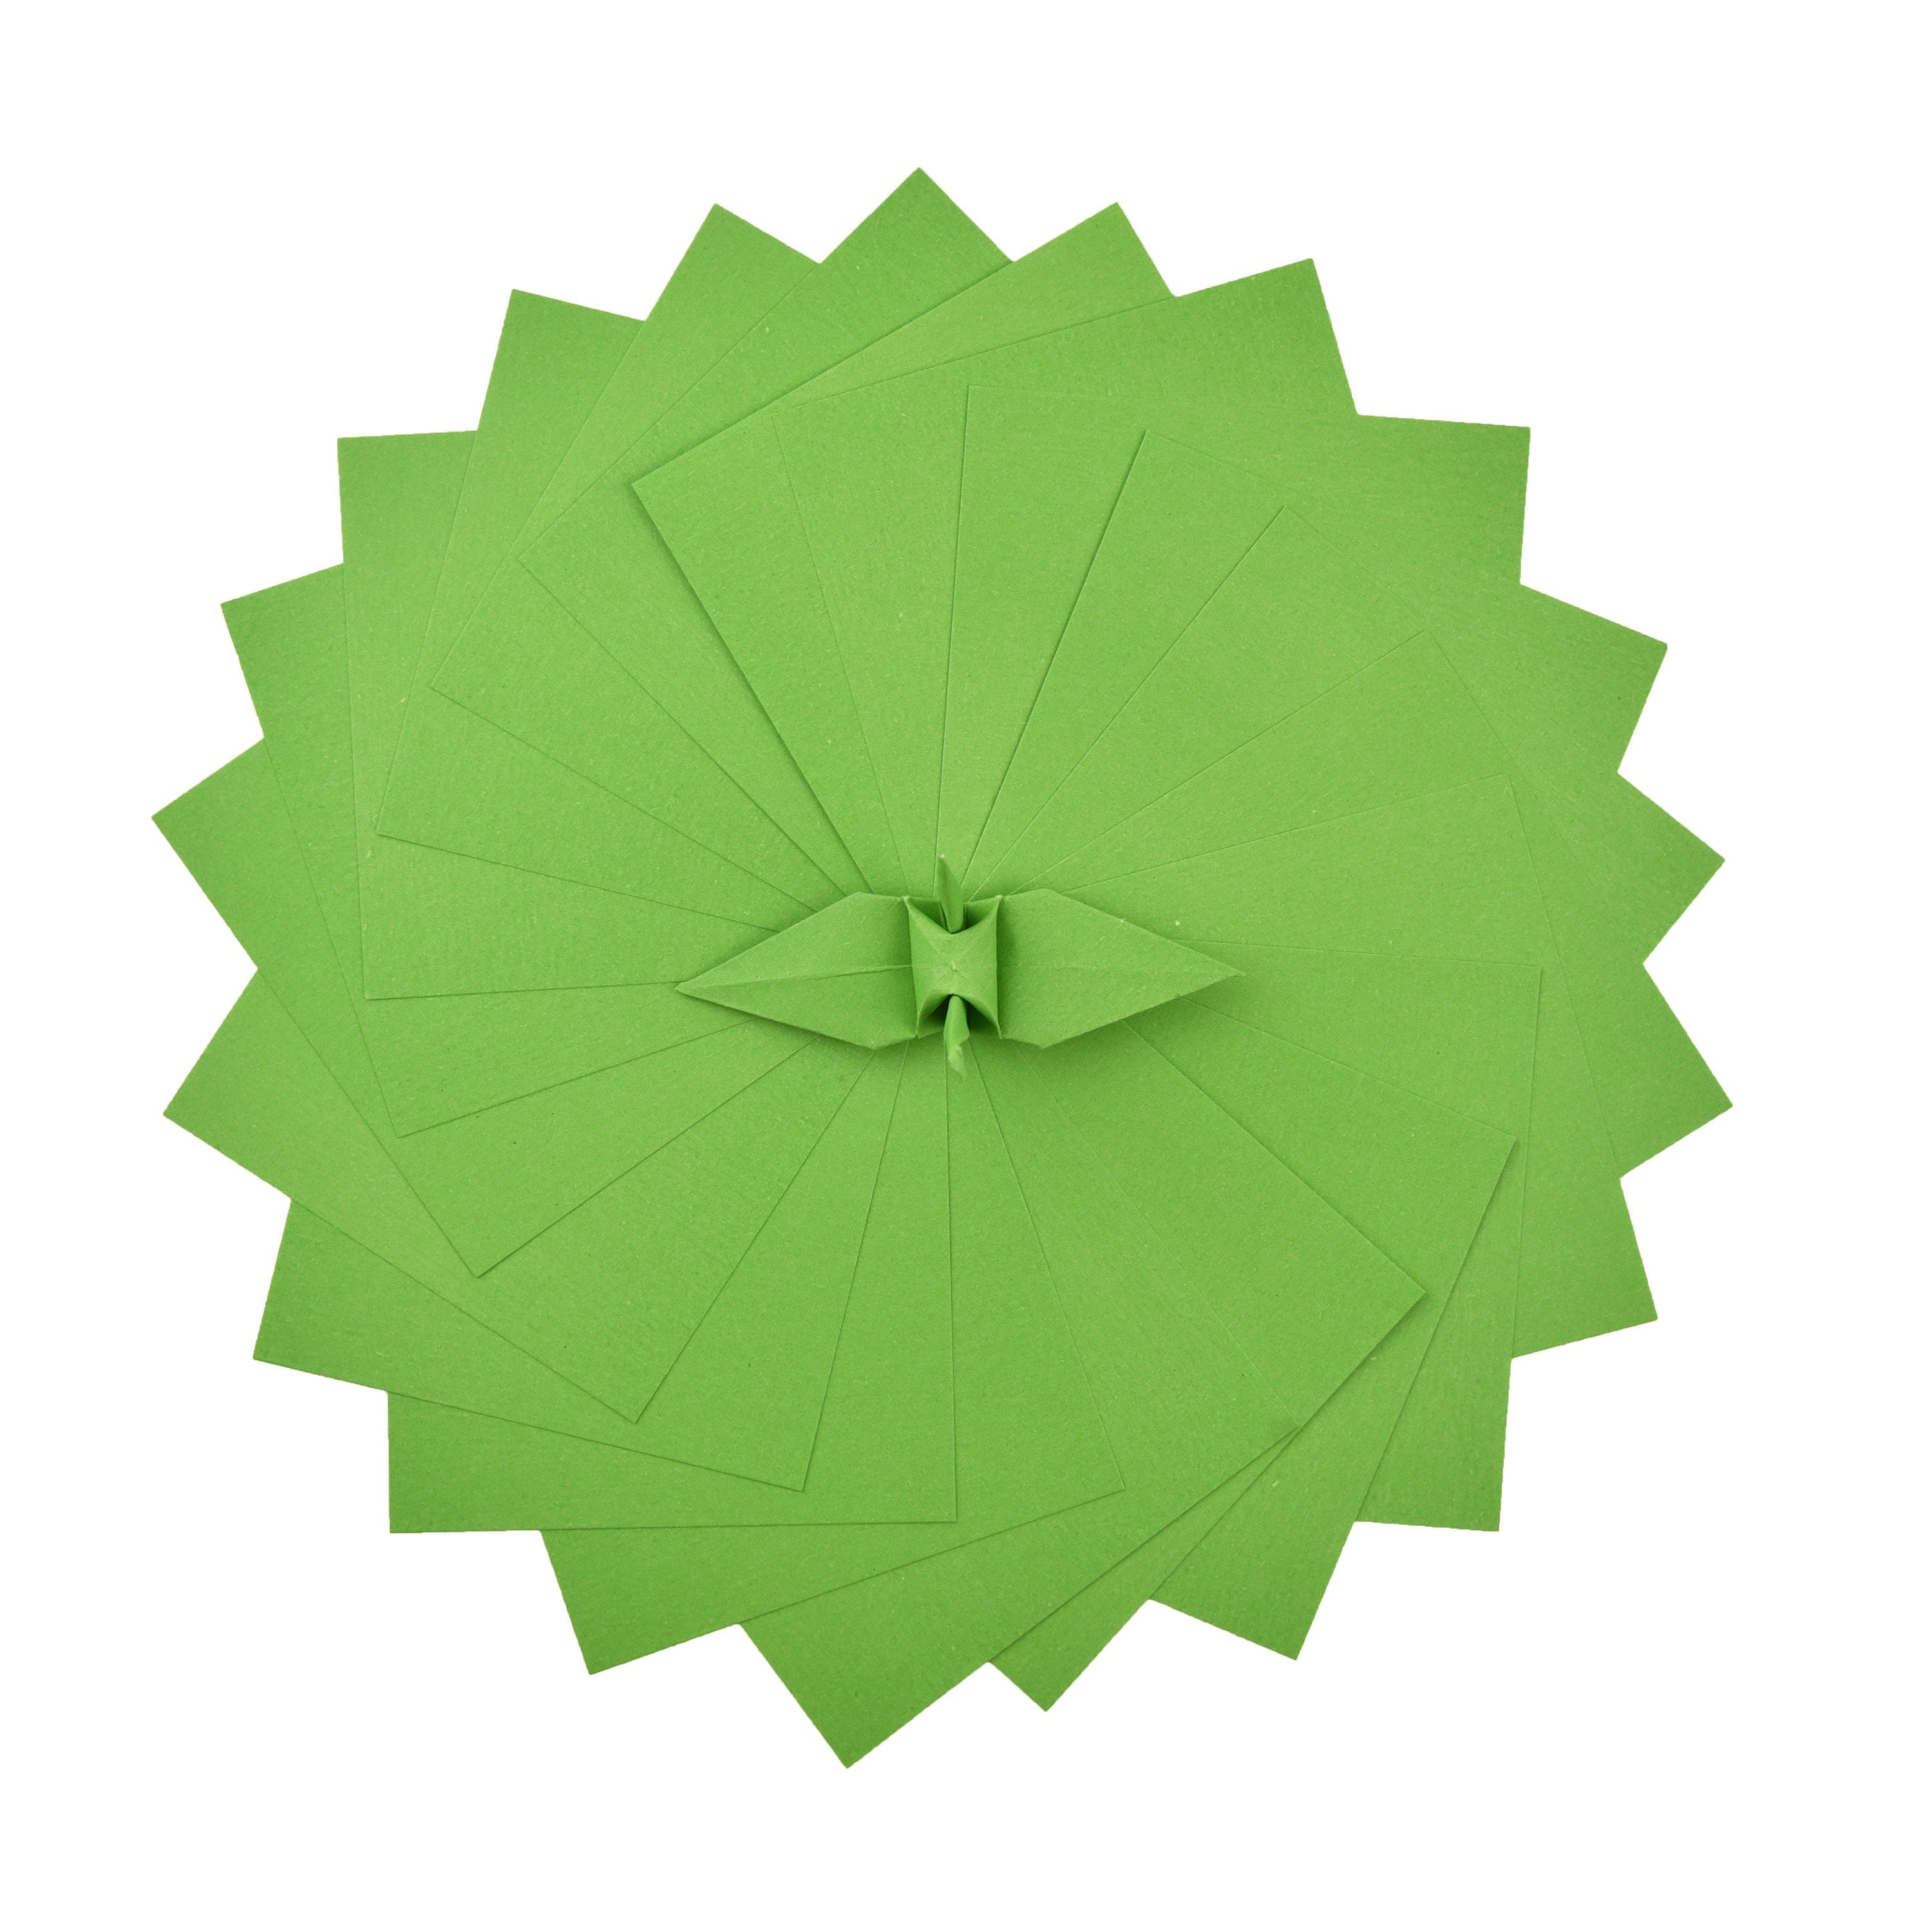 100 fogli di carta origami - 6x6 pollici - Confezione di carta quadrata per piegare, gru origami e decorazioni - S25